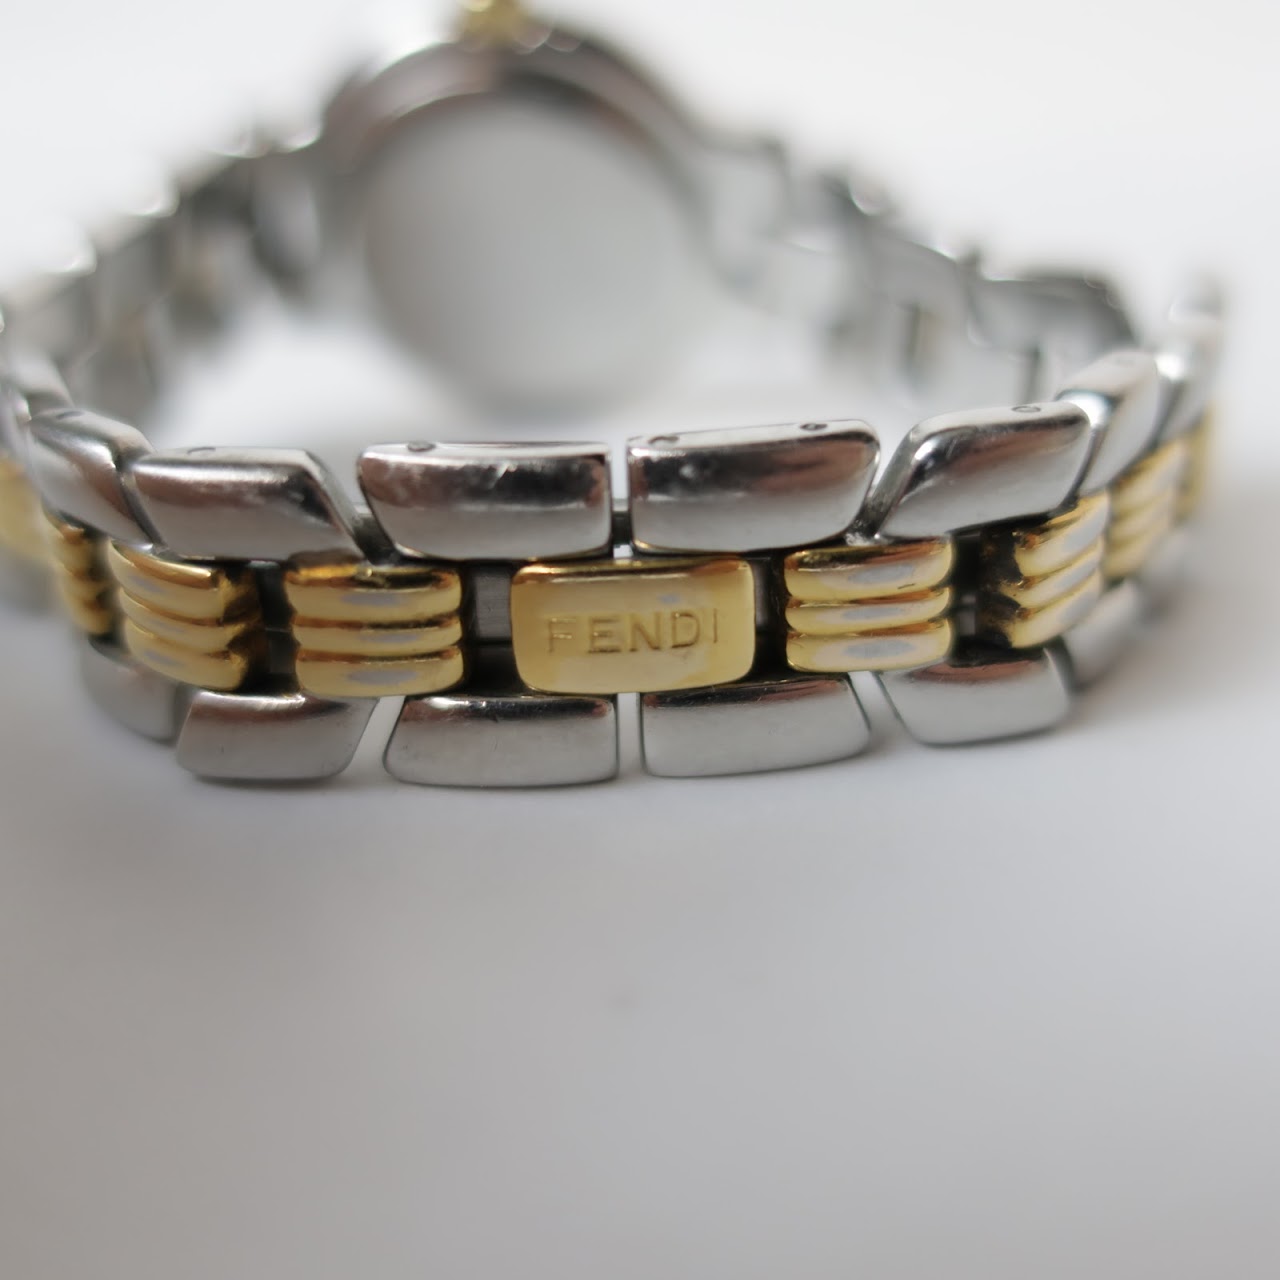 Fendi Two-Tone Bracelet Watch